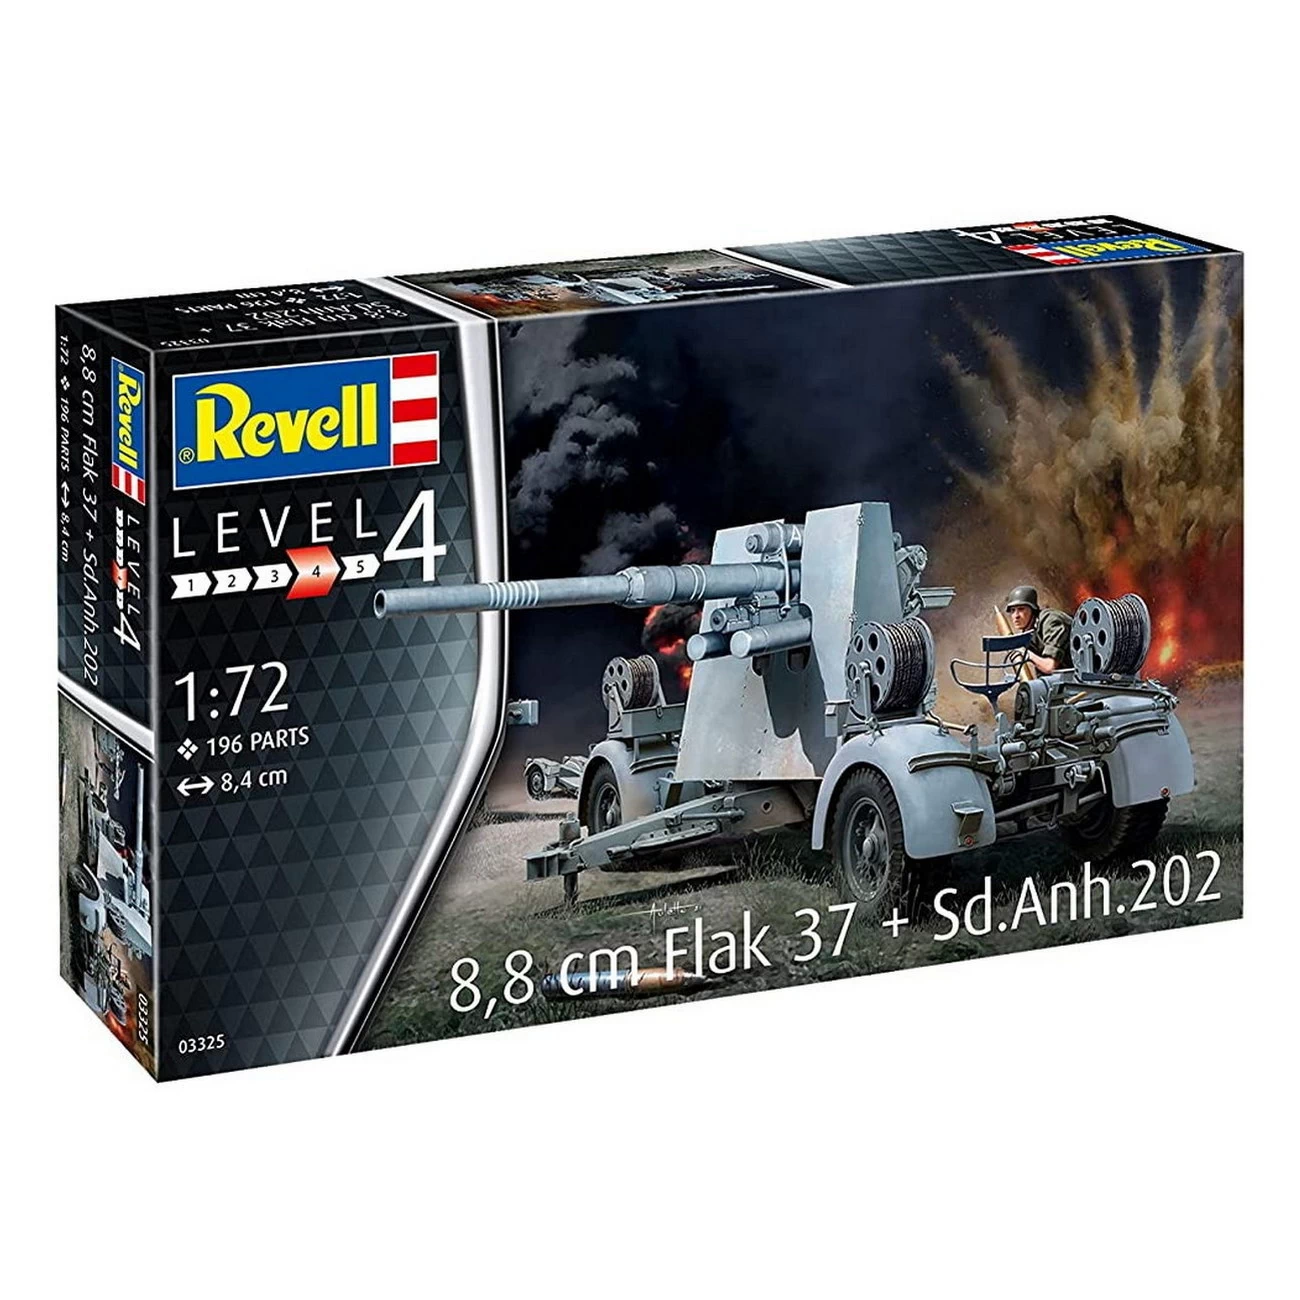 Revell 03325 - 8-8 cm Flak 37  Sd.Anh.202 - Modell